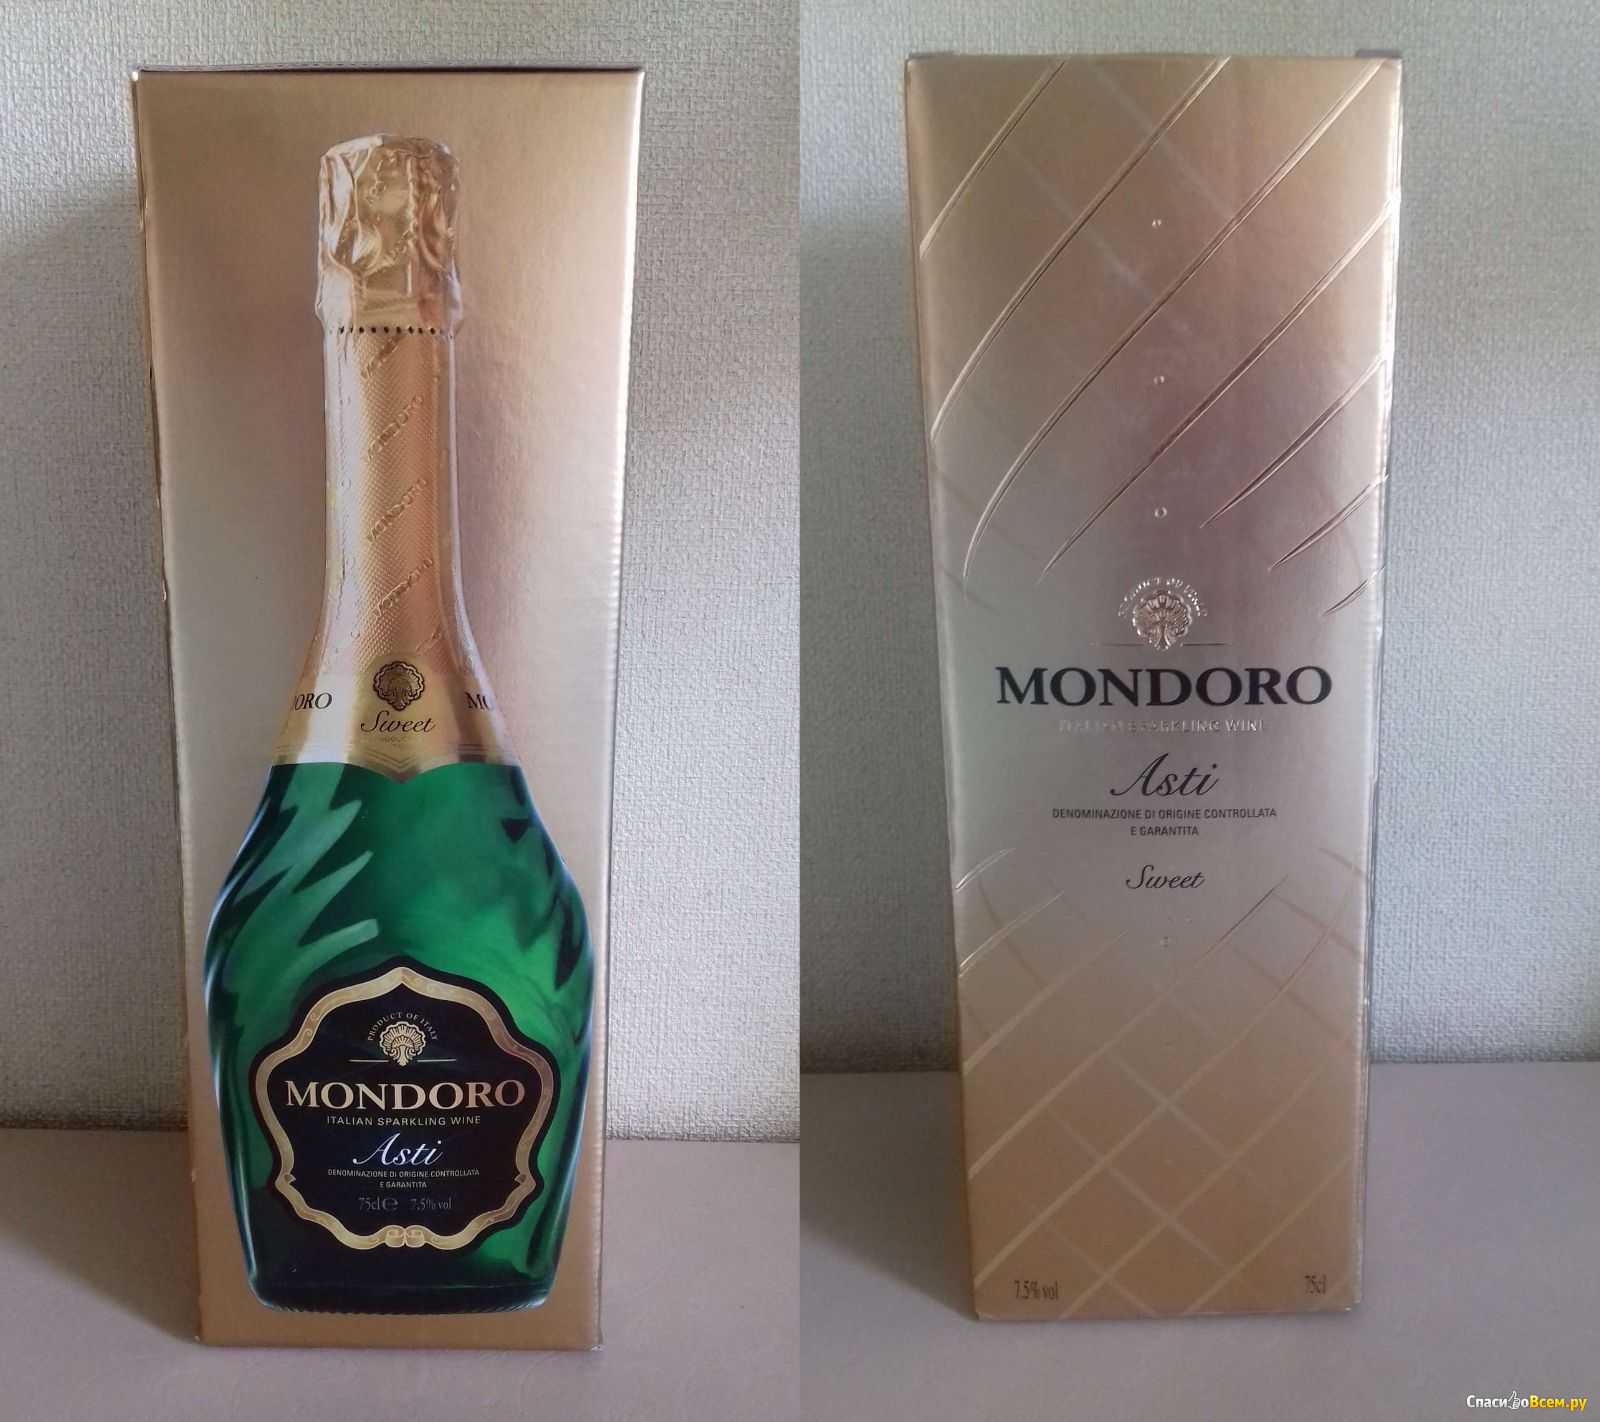 Шампанские вина мондоро — все золото мира